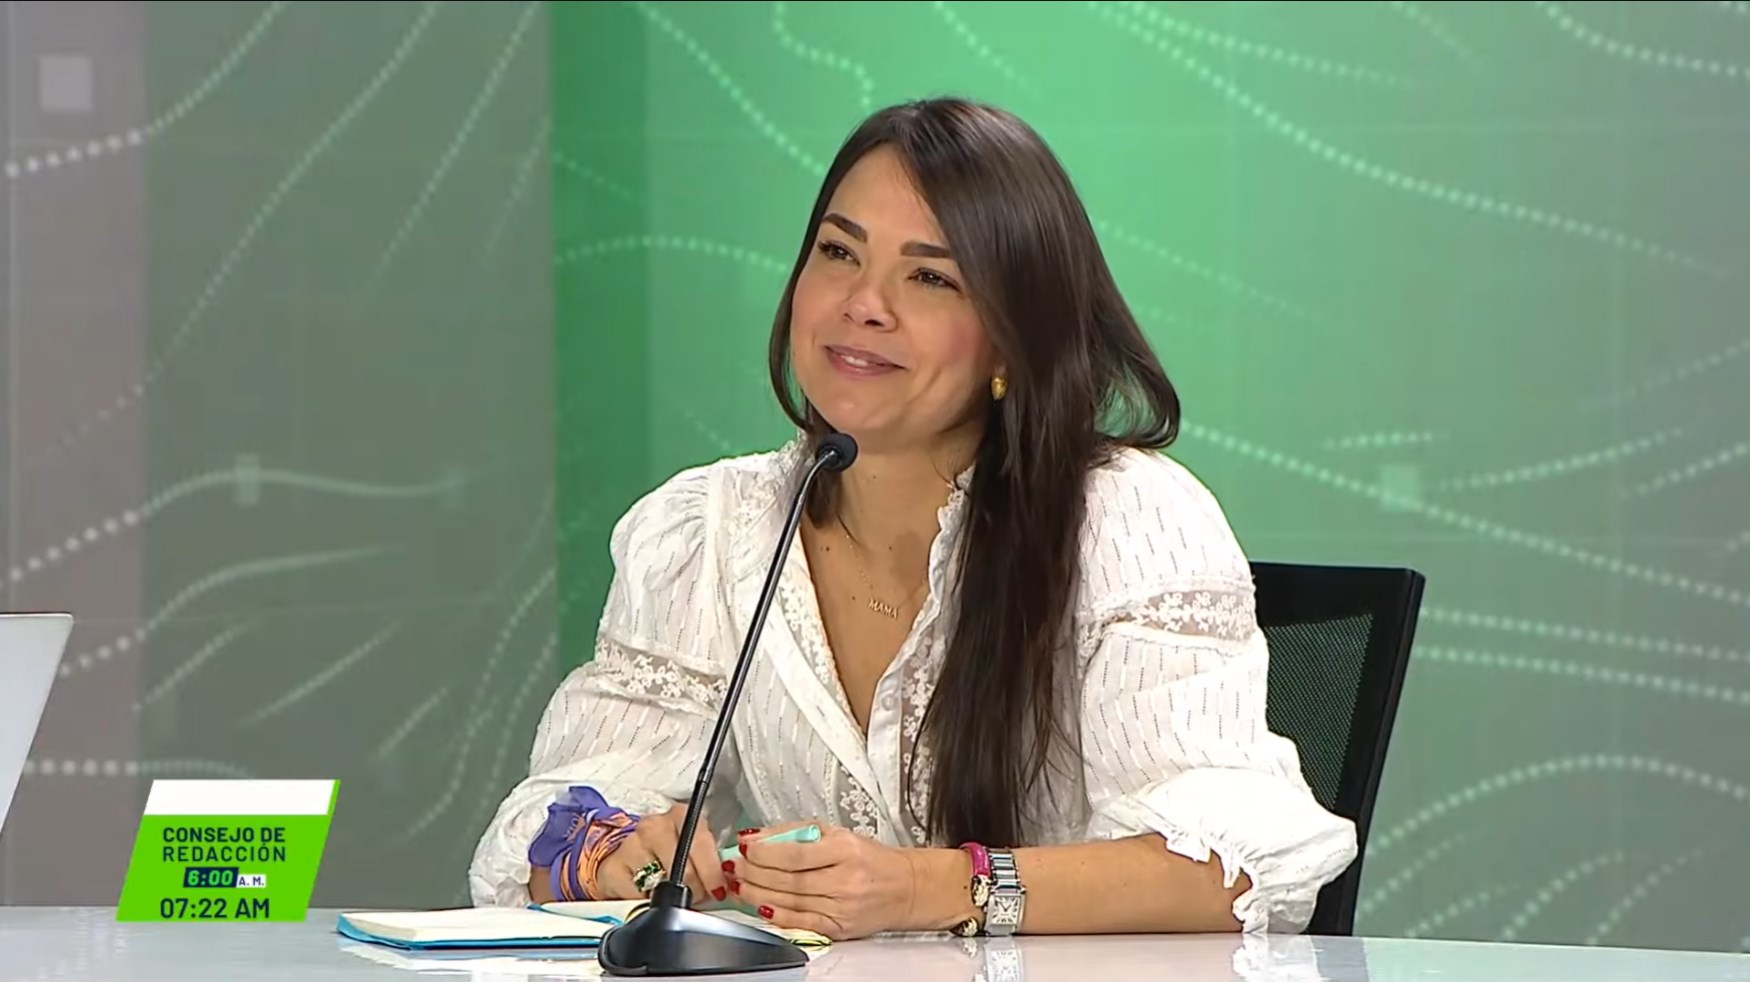 Entrevista para Consejo de Redacción a María Bibiana Botero, presidenta ejecutiva Proantioquia.